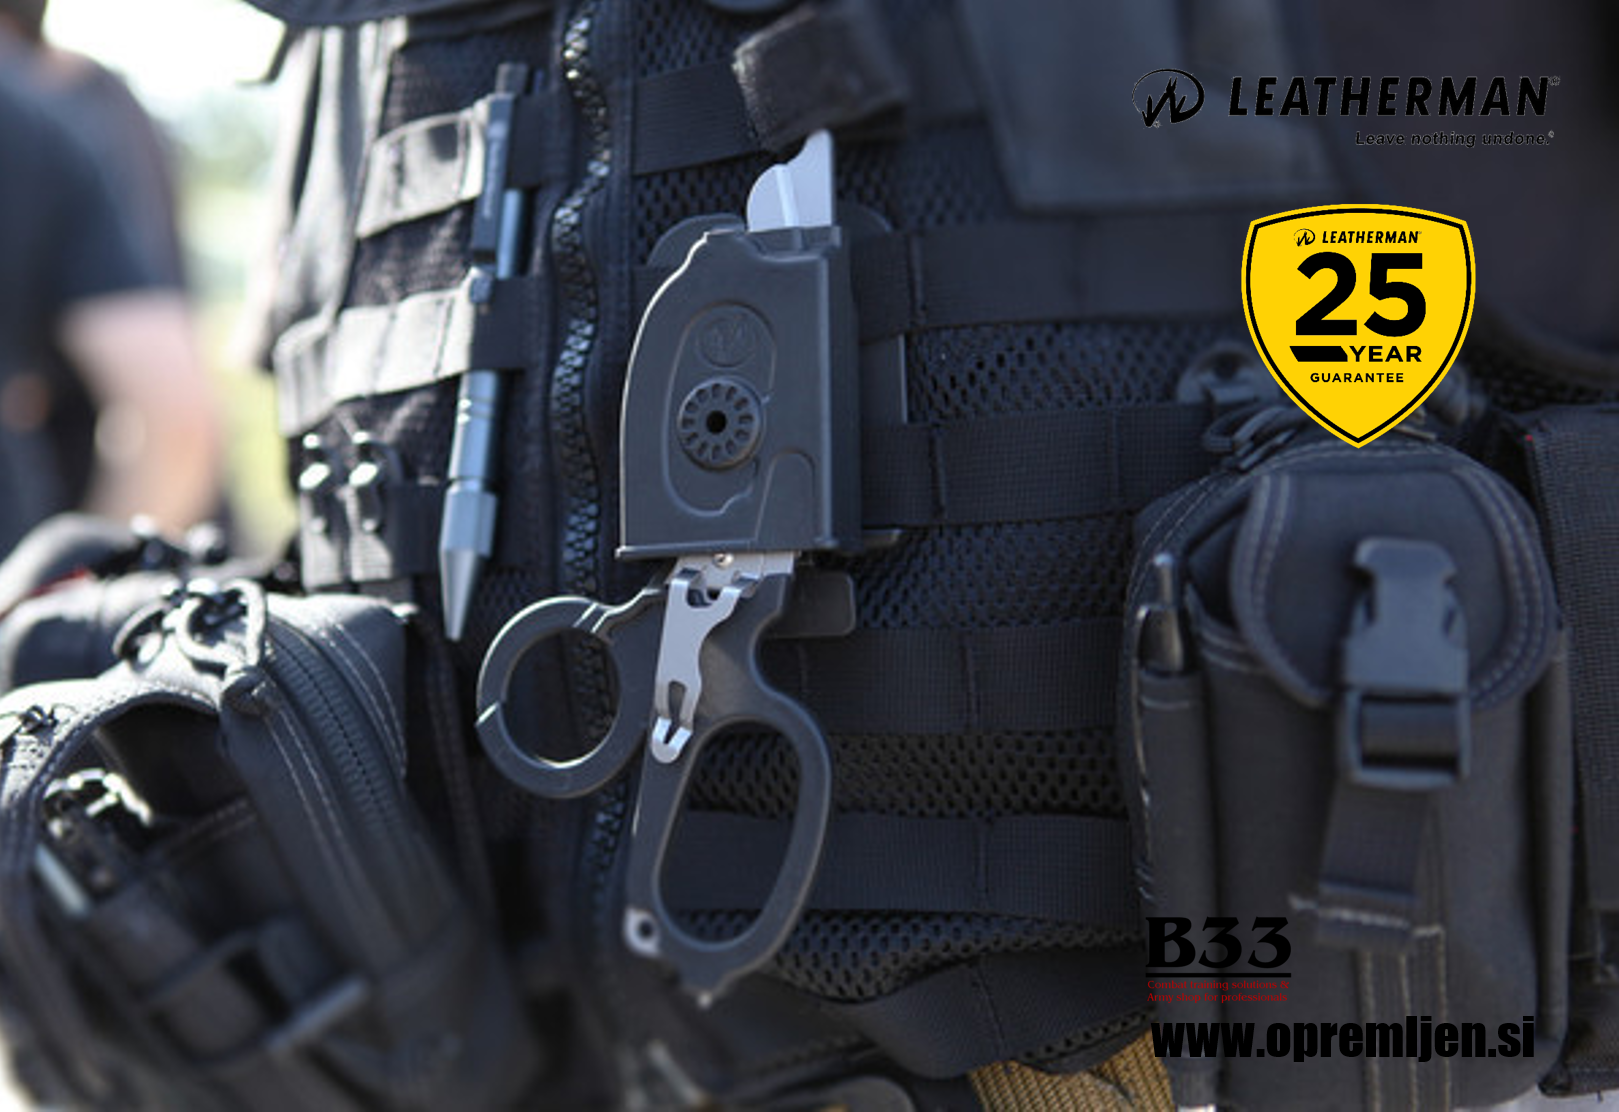 B33 army shop - Leatherman - Raptor Medicinske škarje iz nerjavečega jekla 420HC by B33 army shop at www.opremljen.si, trgovina z vojaško opremo, vojaška oprema